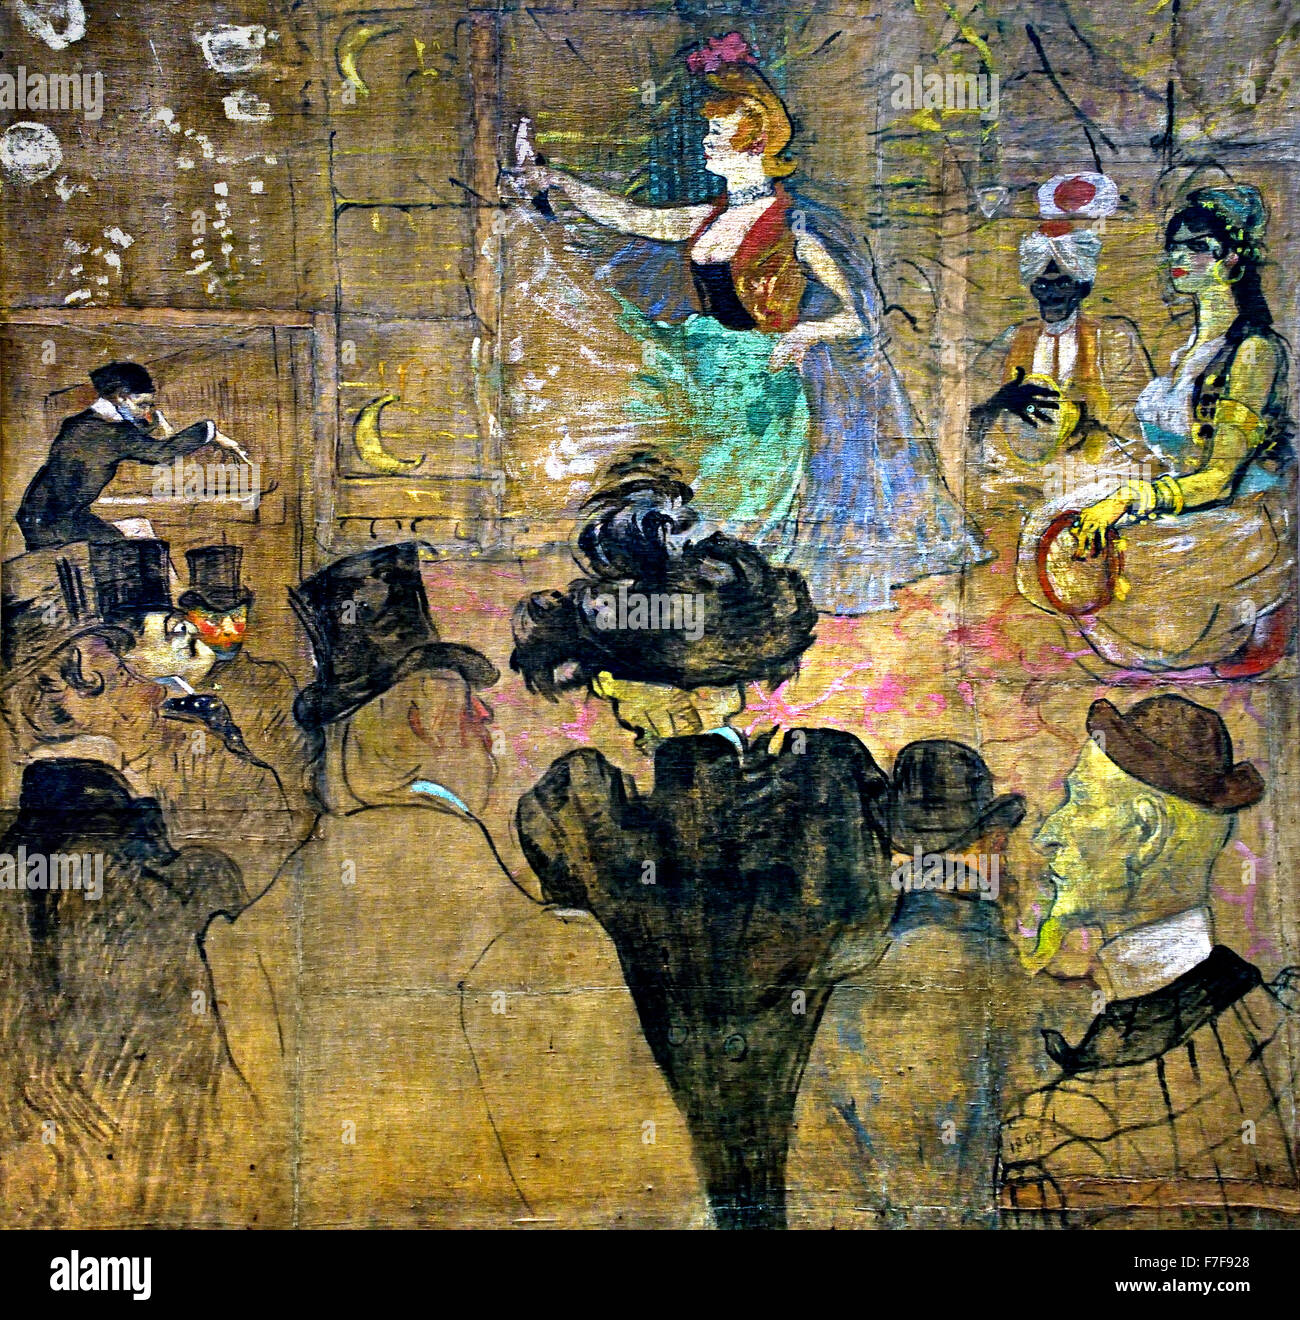 Panneaux pour la maison de la Goulue à la Foire du Trone in Paris 1895 Henri de Toulouse Lautrec 1864 - 1901 Paris France French Banque D'Images